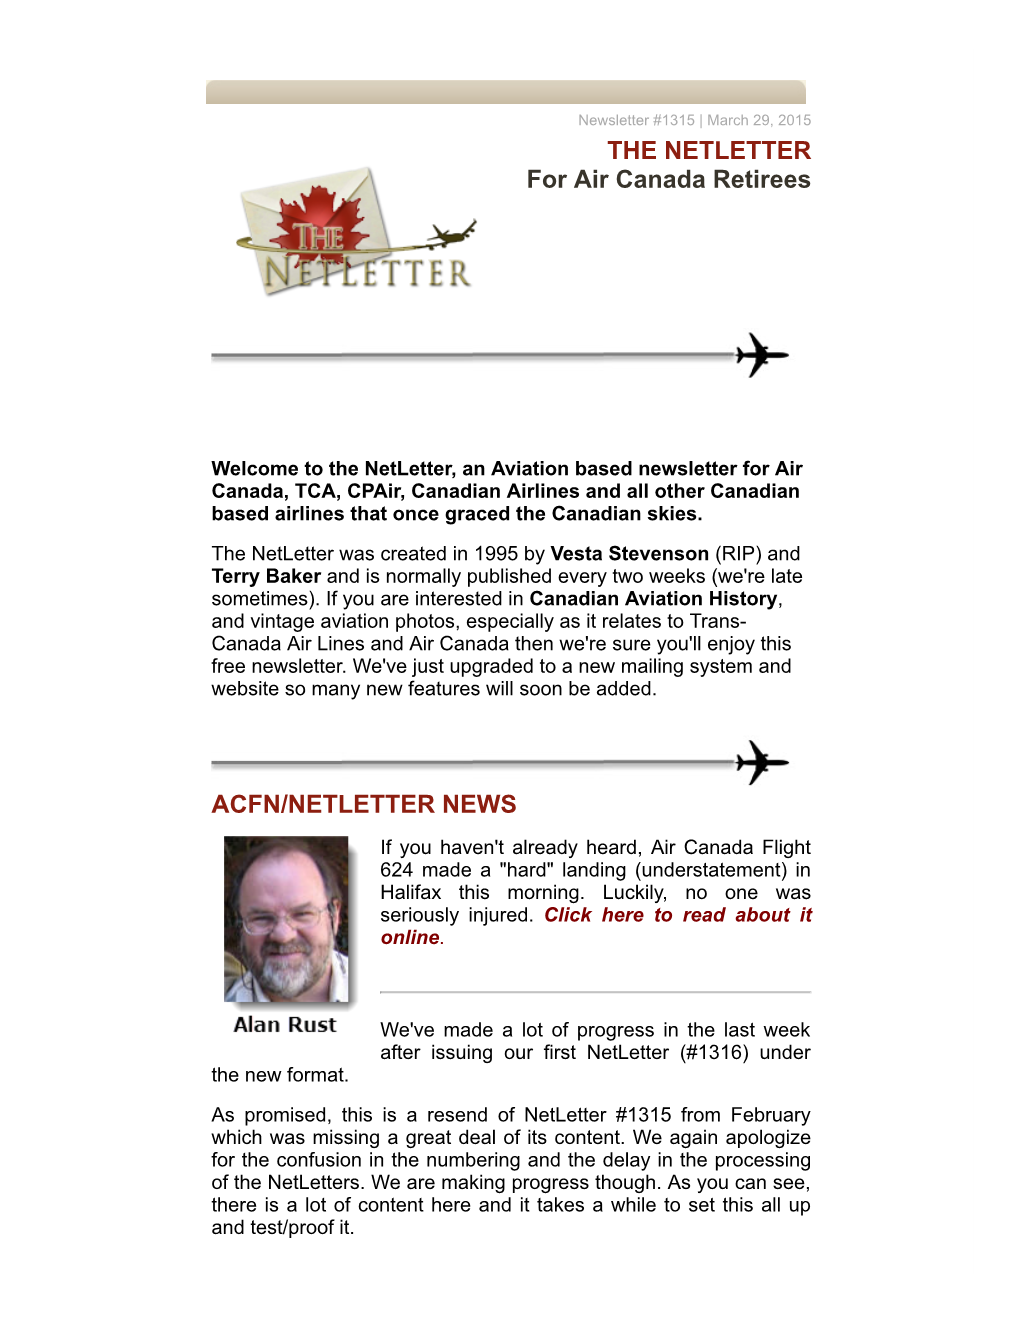 THE NETLETTER for Air Canada Retirees ACFN/NETLETTER NEWS